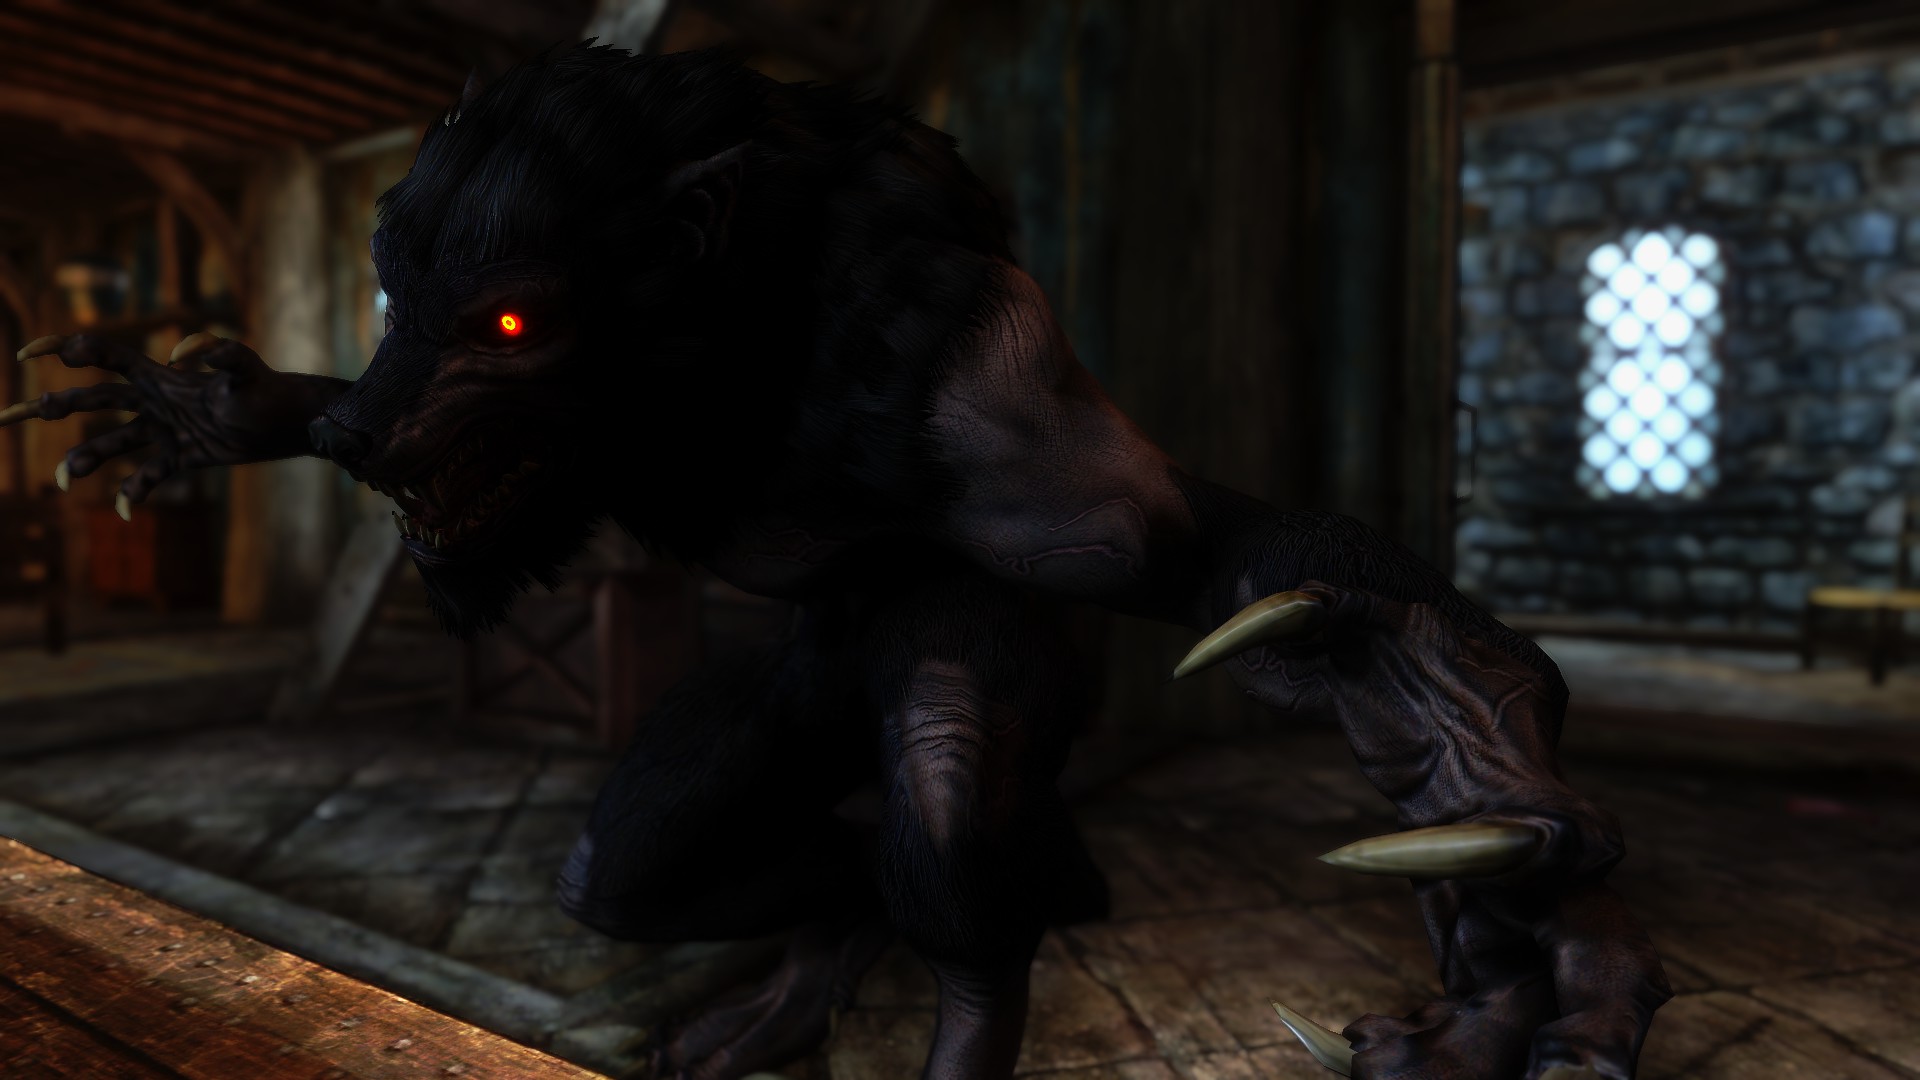 Apex Werewolf in Skyrim 3 by Zerofrust on DeviantArt